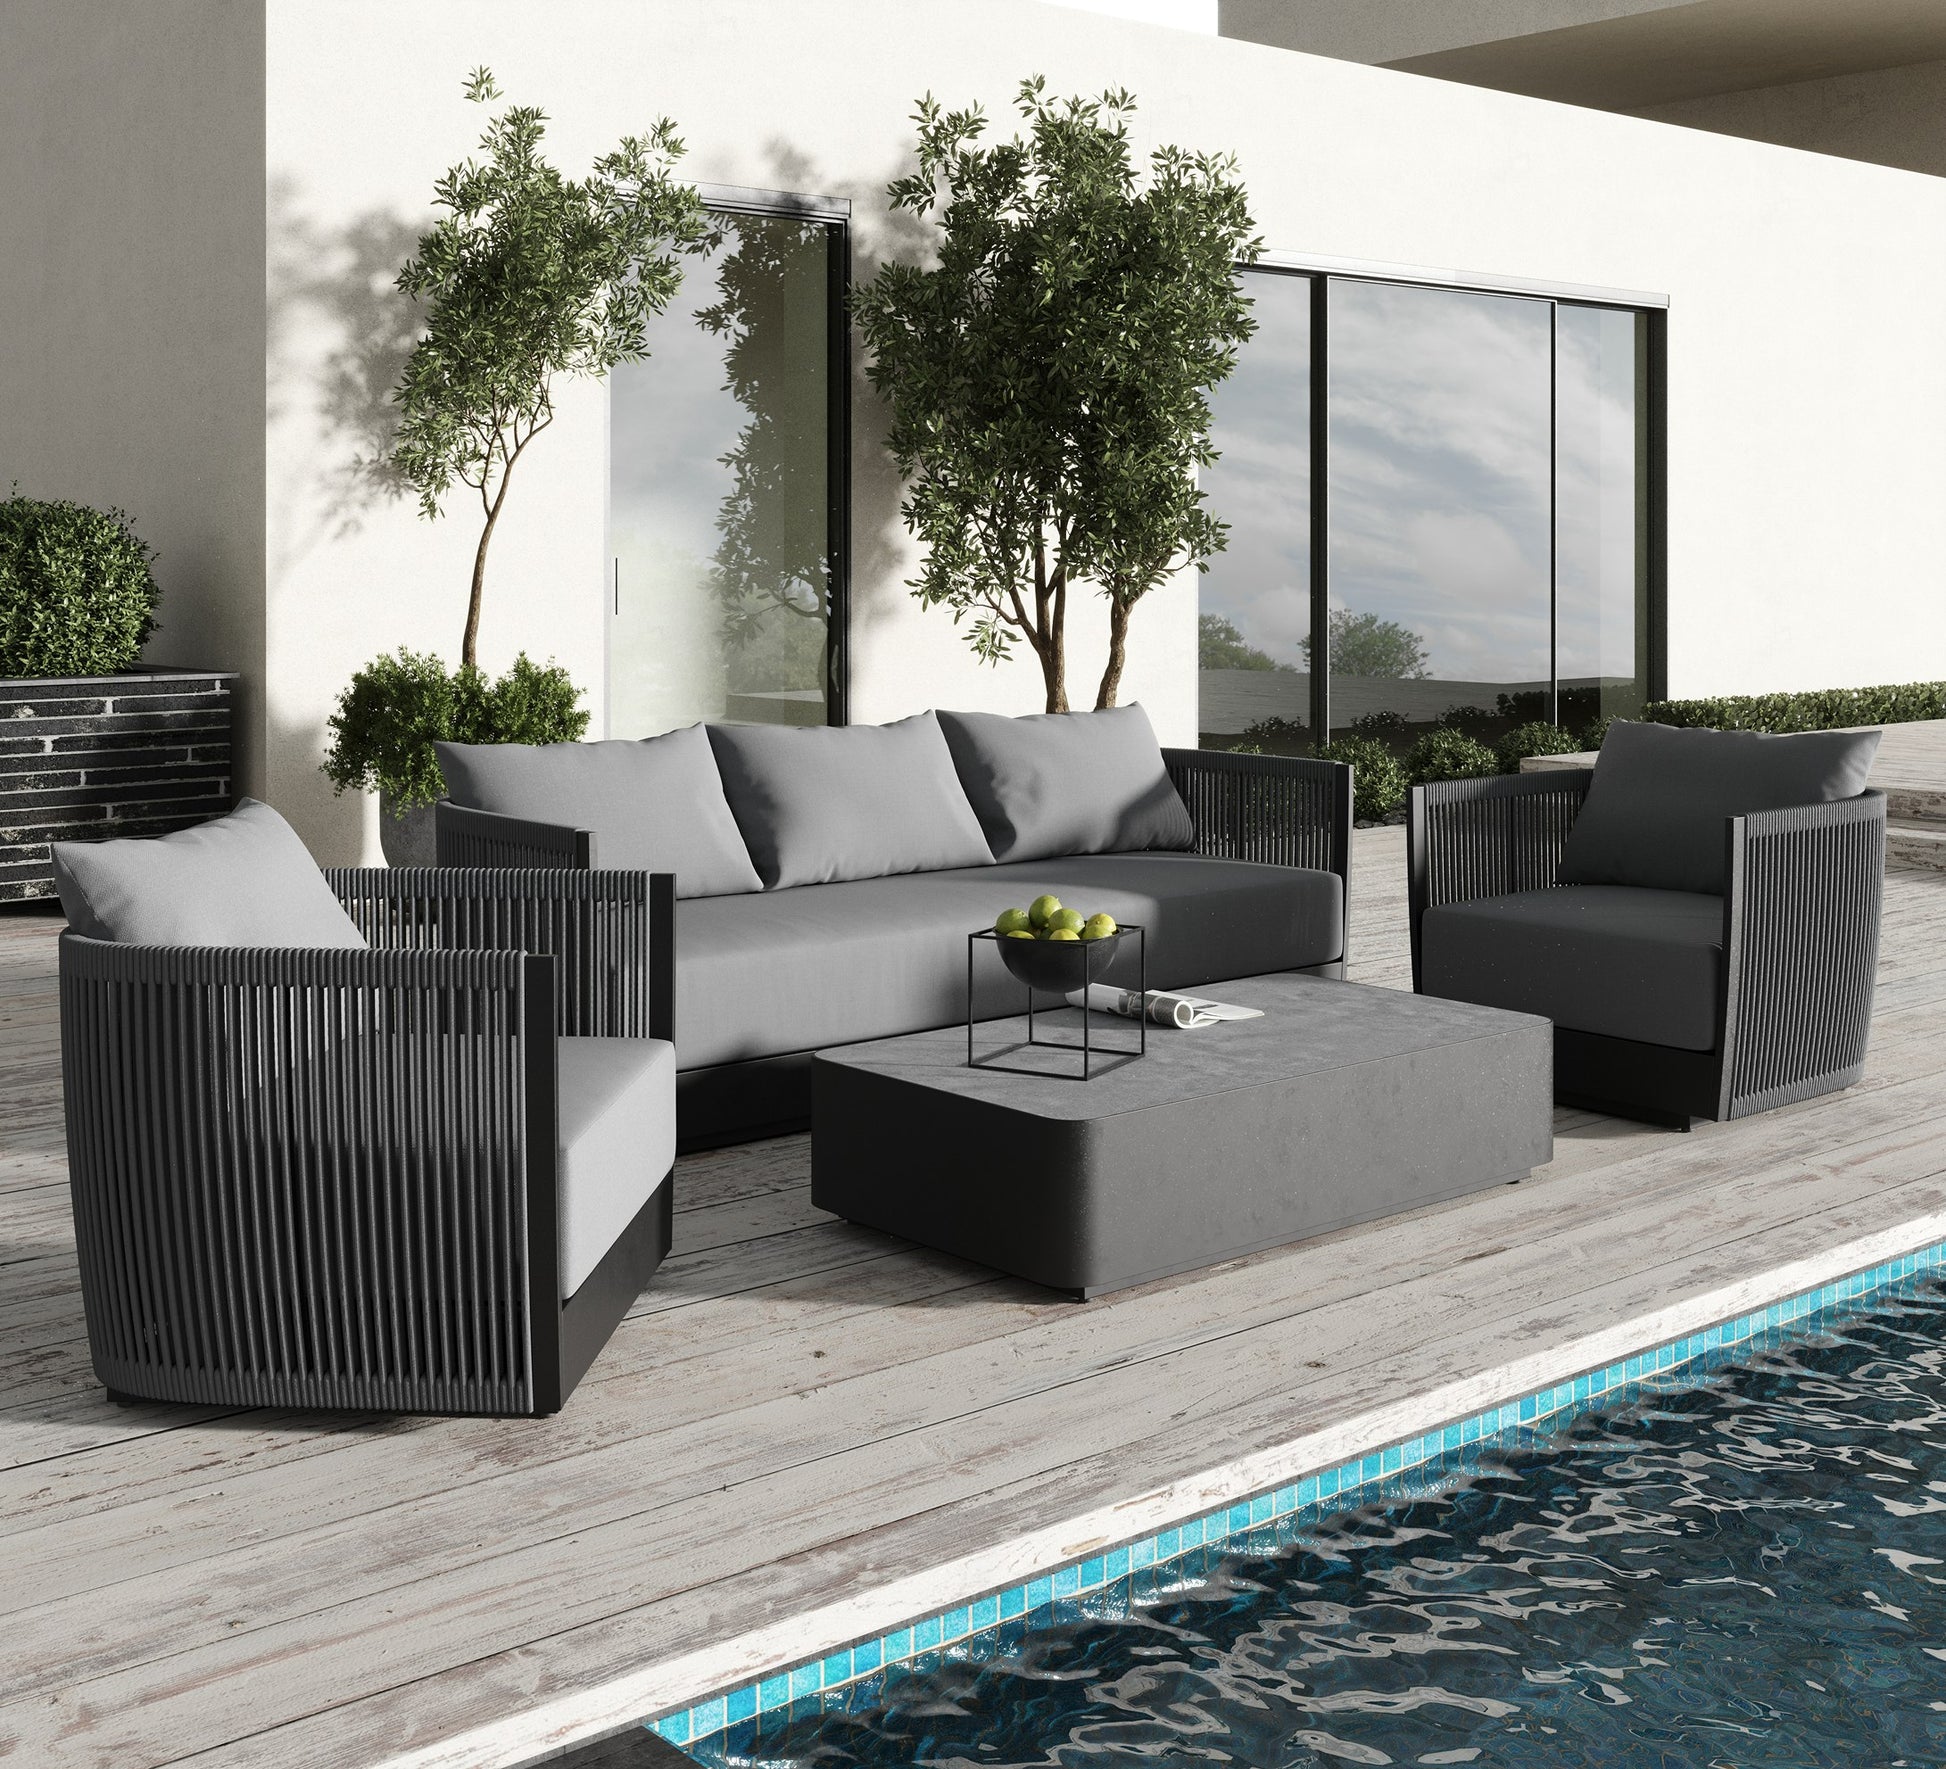 Renava Bali - Outdoor Black and Grey Sofa Set